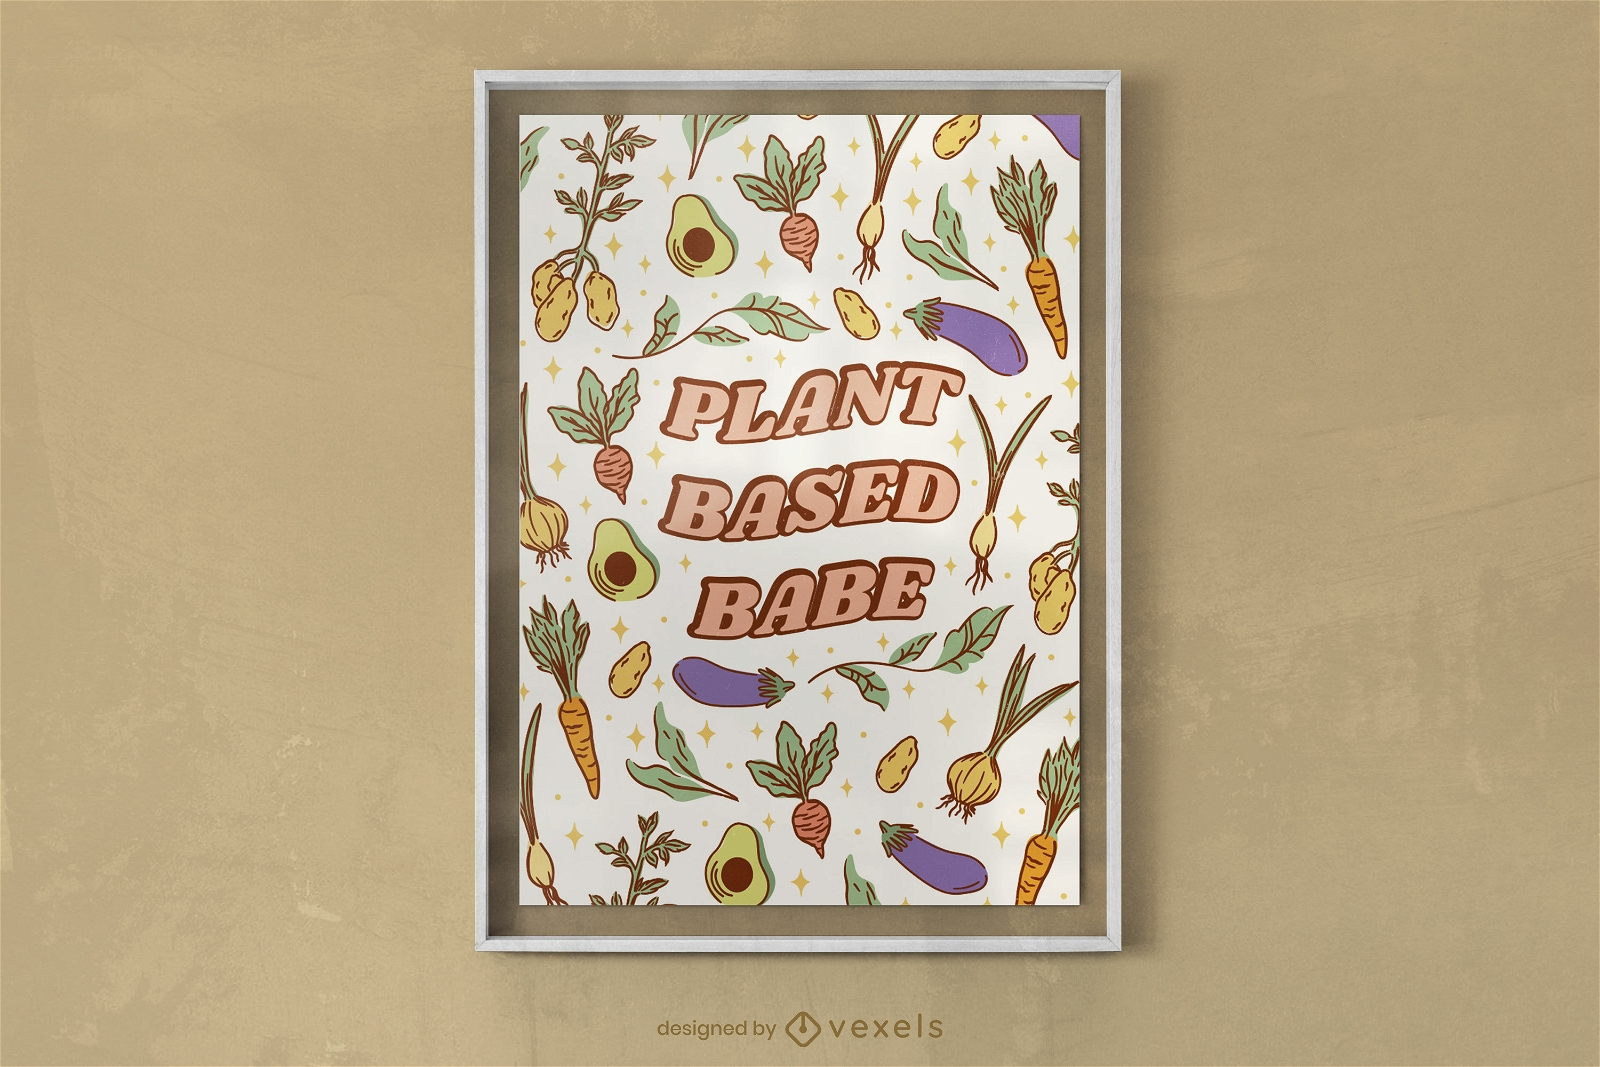 Veganes Plakatdesign auf pflanzlicher Basis